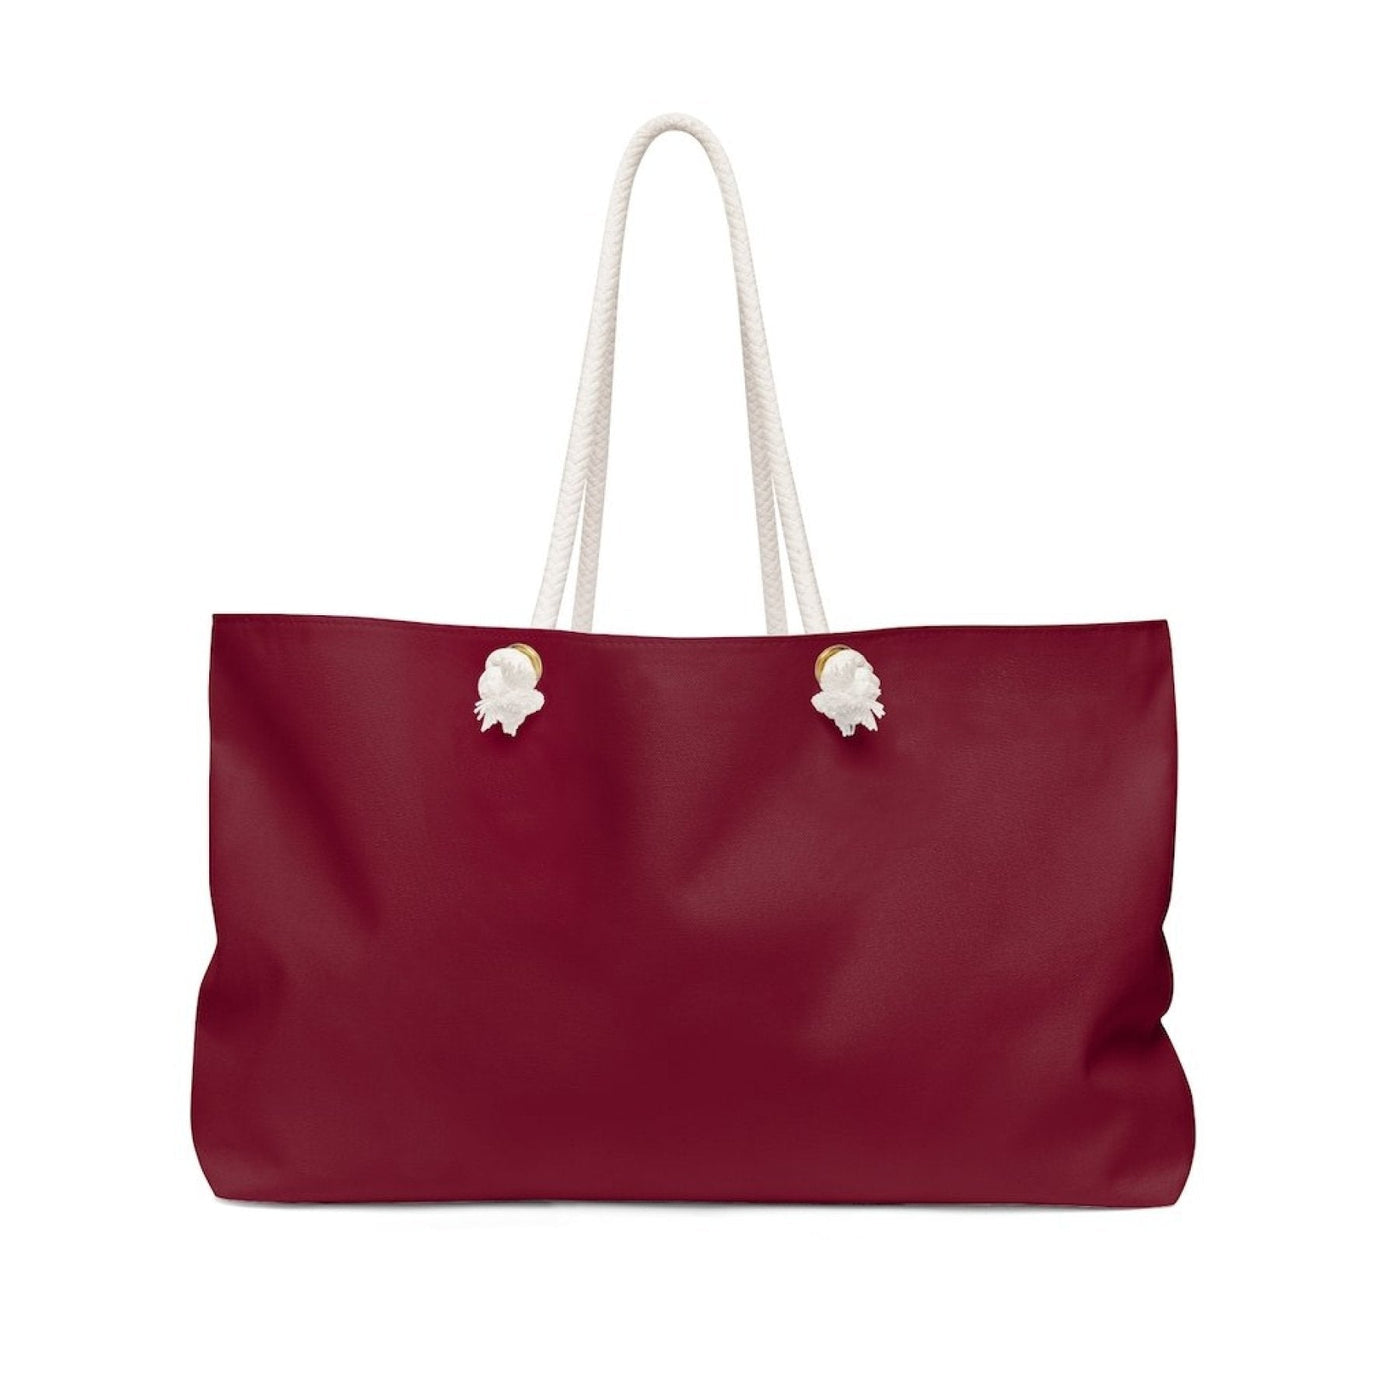 Weekender Tote Bag Burgundy - Bags | Tote Bags | Weekender